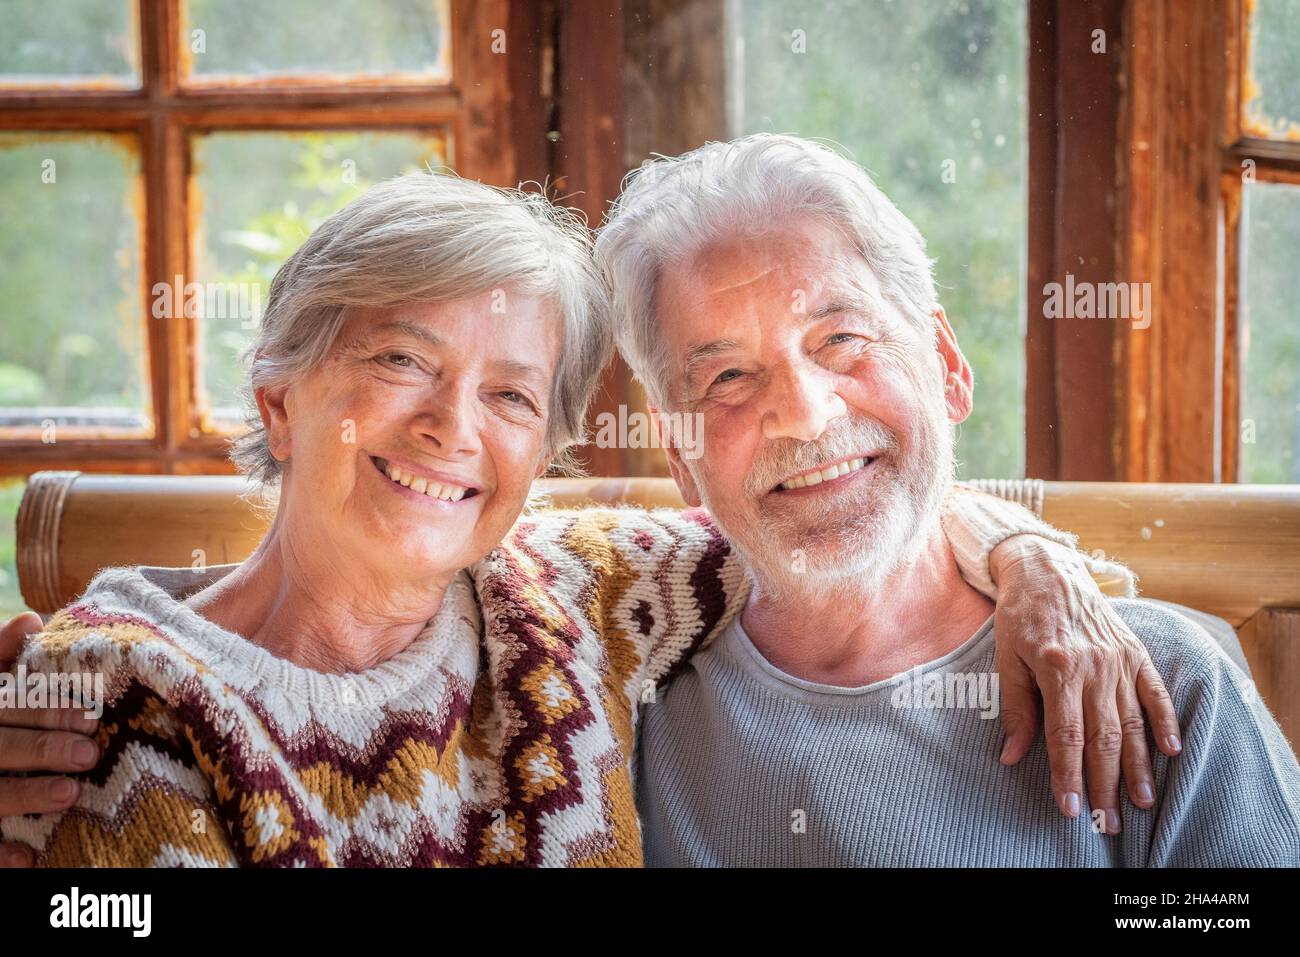 Fröhliches und fröhliches Porträt eines älteren Ehepaares, das zu Hause lächelt und umarmt. Ältere Menschen im Ruhestand Mann und Frau genießen die Zeit zusammen mit Liebe und Freundschaft Stockfoto